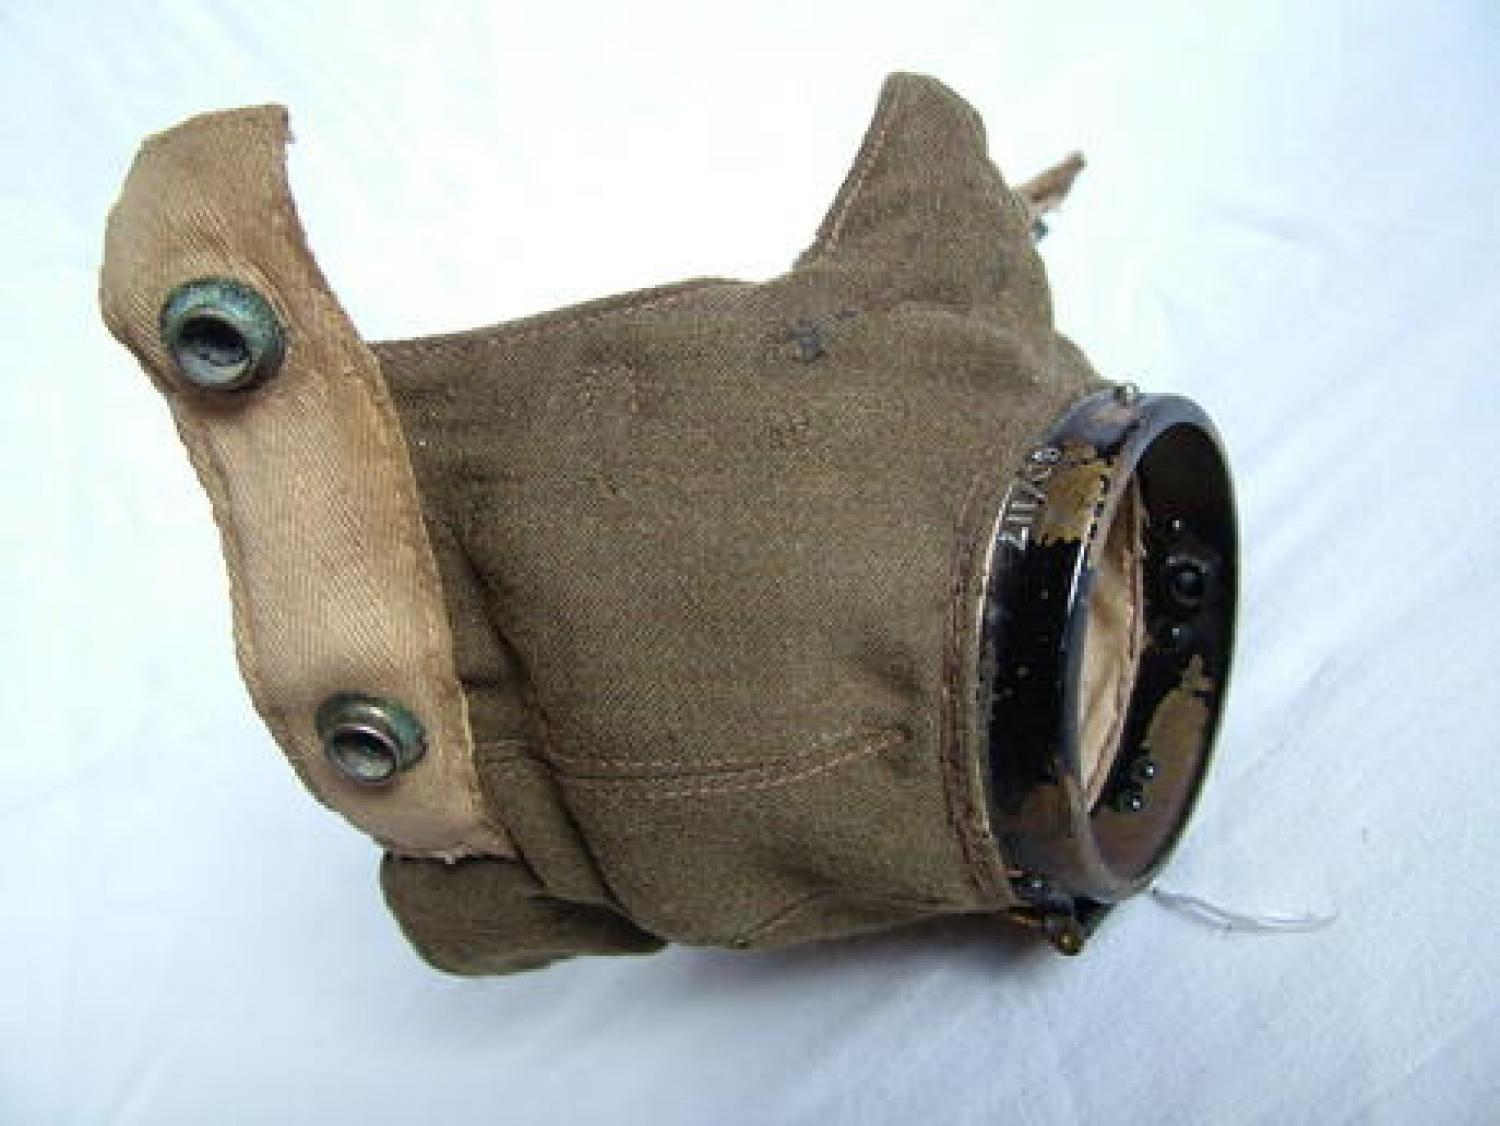 RAF D-type Oxygen mask